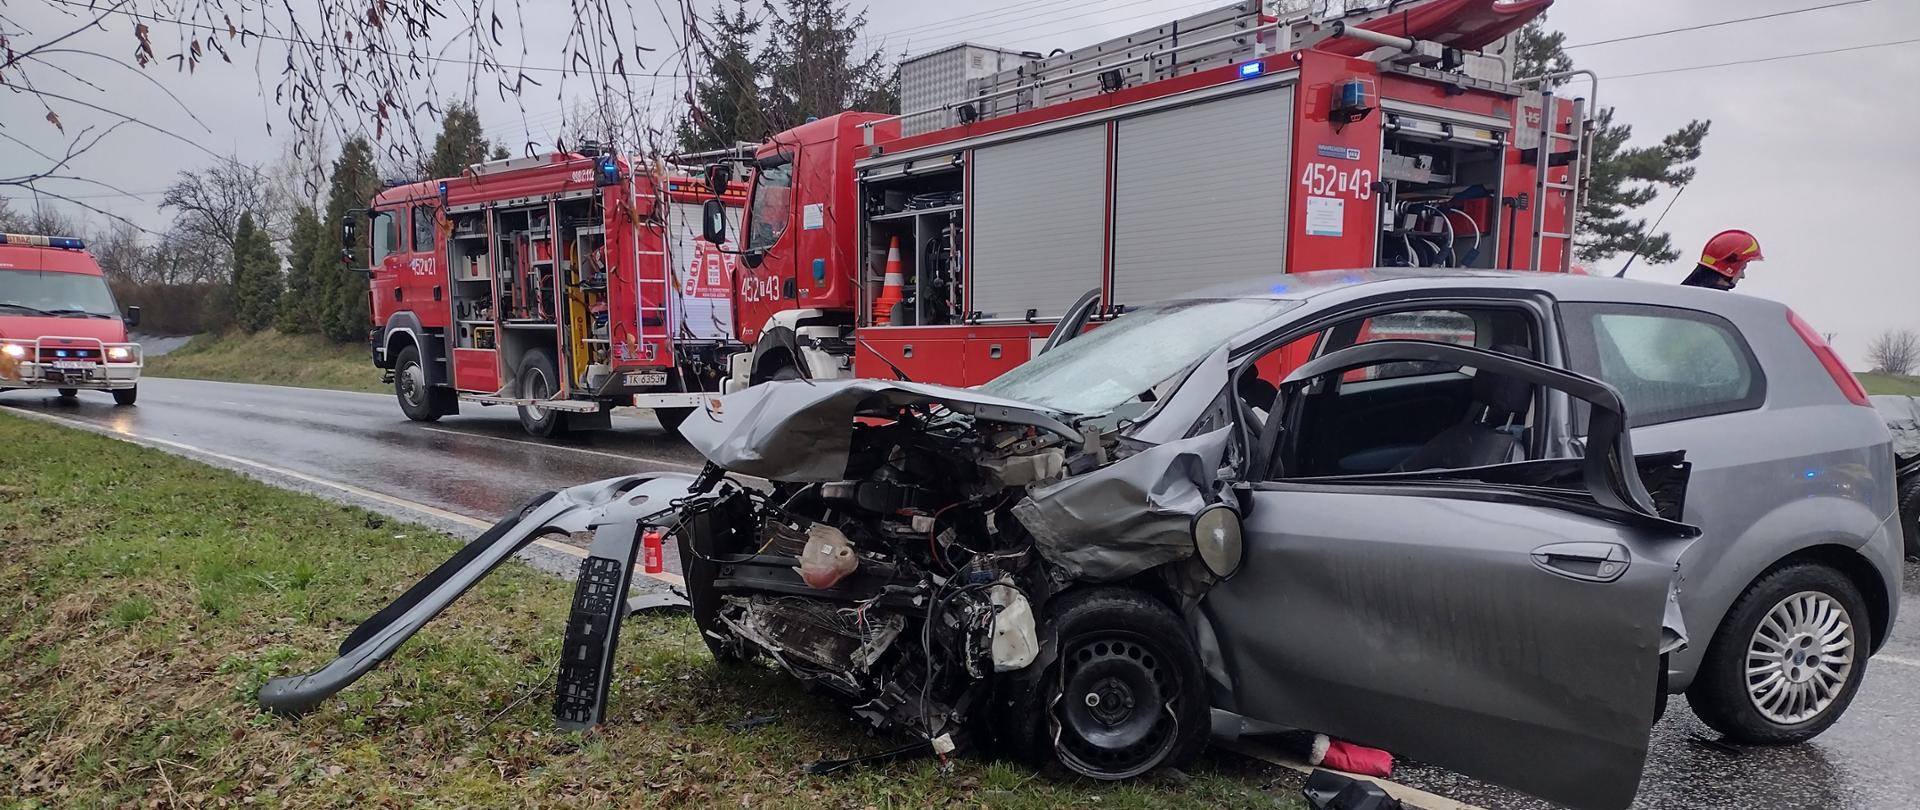 Na pierwszym planie rozbity samochód marki Fiat Punto. W drugim planie widać 3 samochody Państwowej Straży Pożarnej oraz strażaka zabezpieczającego teren działań.